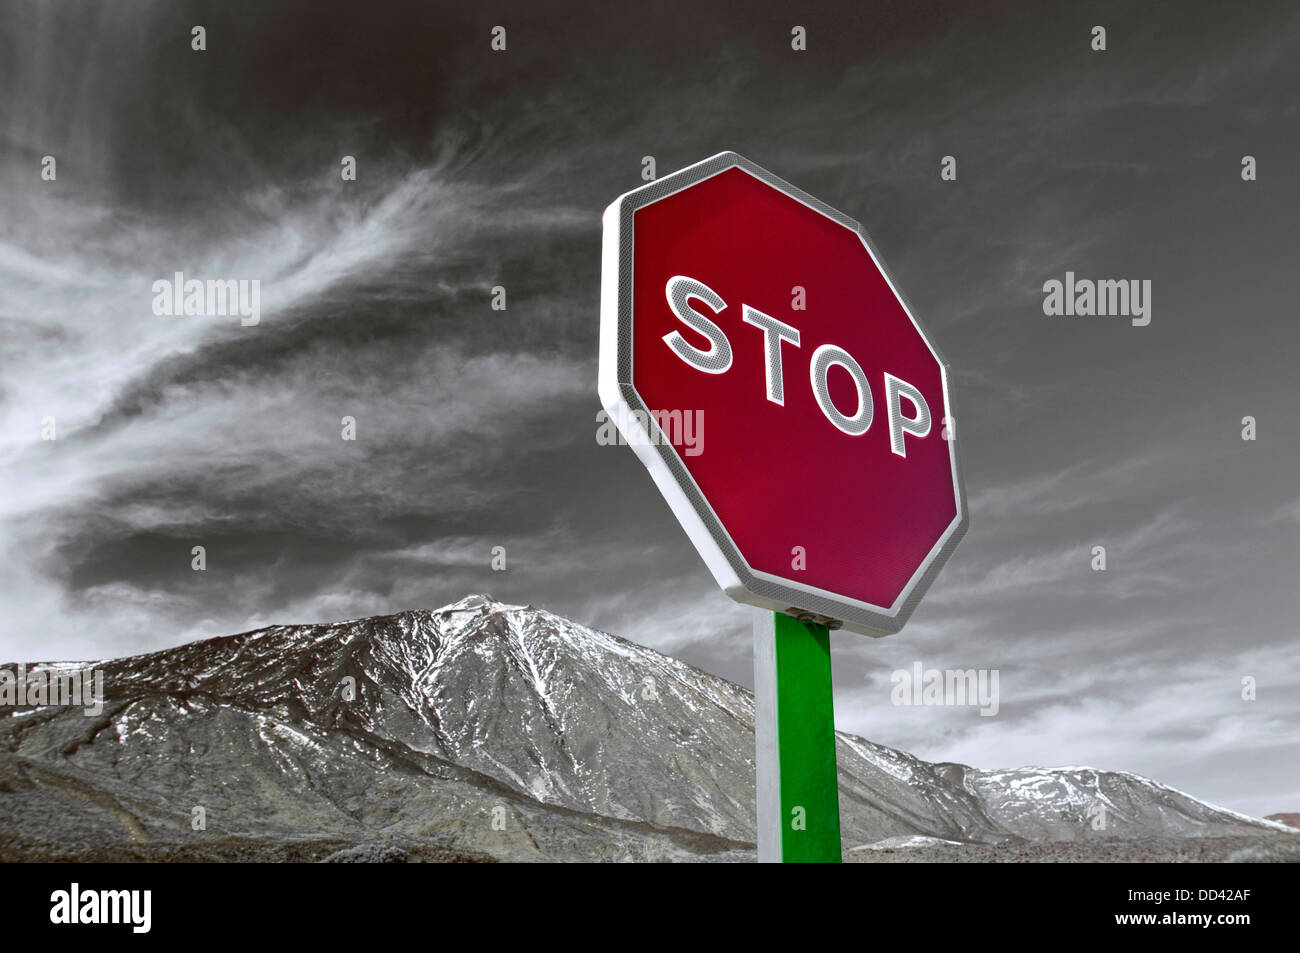 Inscrivez-vous sur 'STOP' avec montagne derrière représentant un avertissement symbolique à l'égard des problèmes environnementaux tels que le changement climatique Banque D'Images